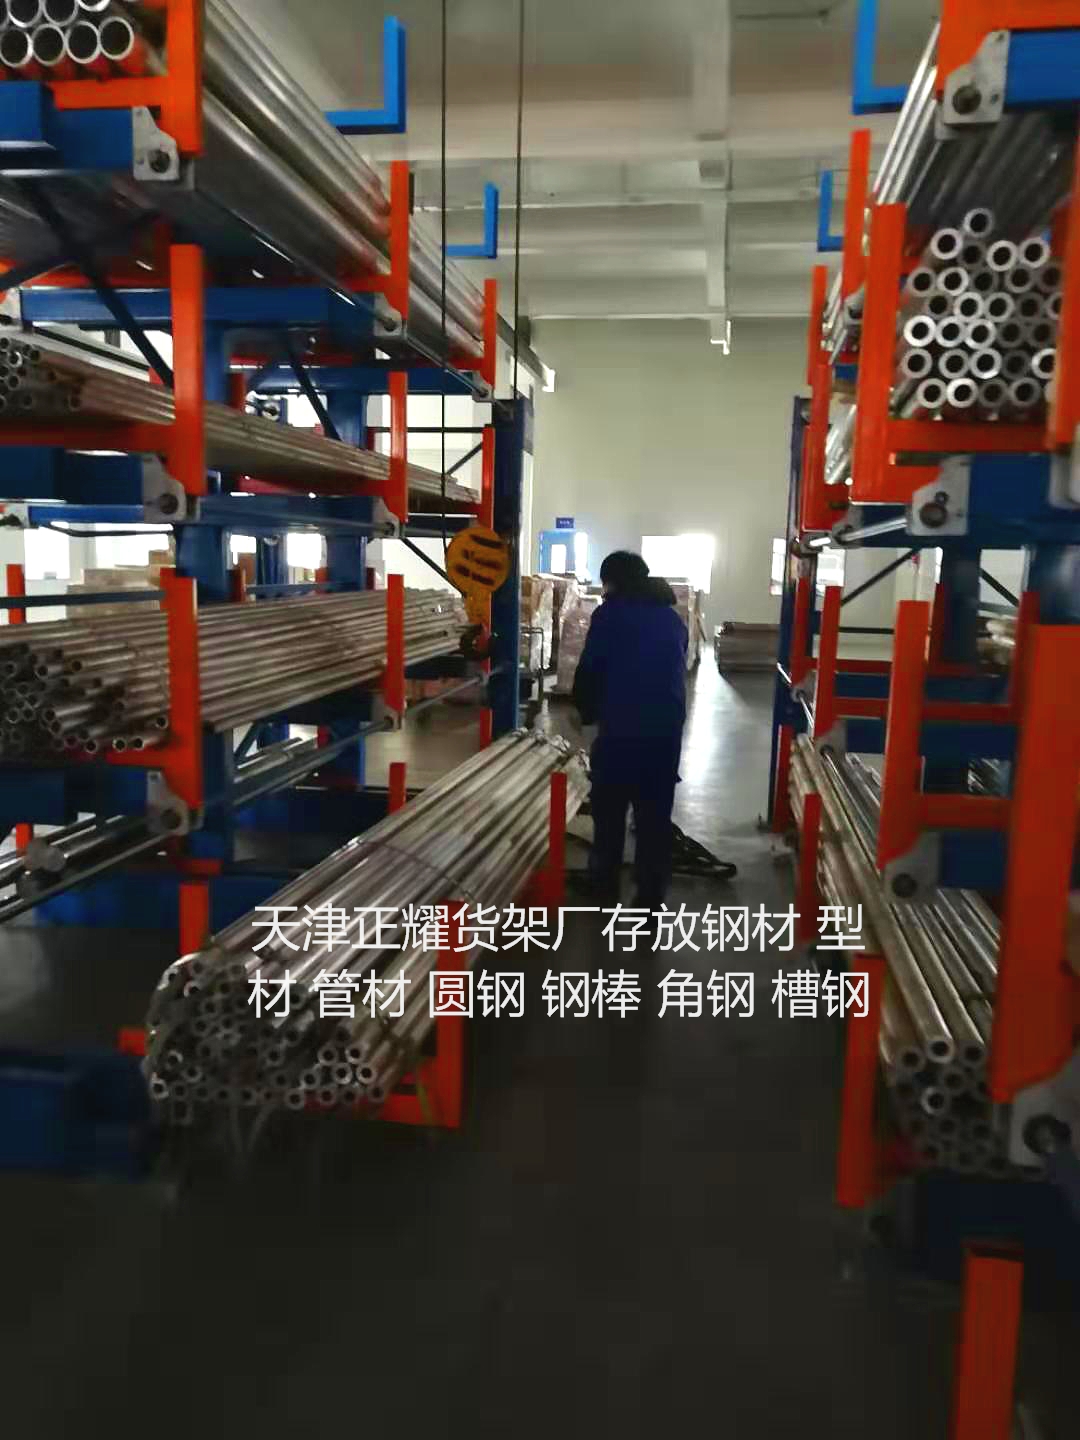 杭州钢材货架可以使用吊车存放钢材，其他货架不具备这个特点。